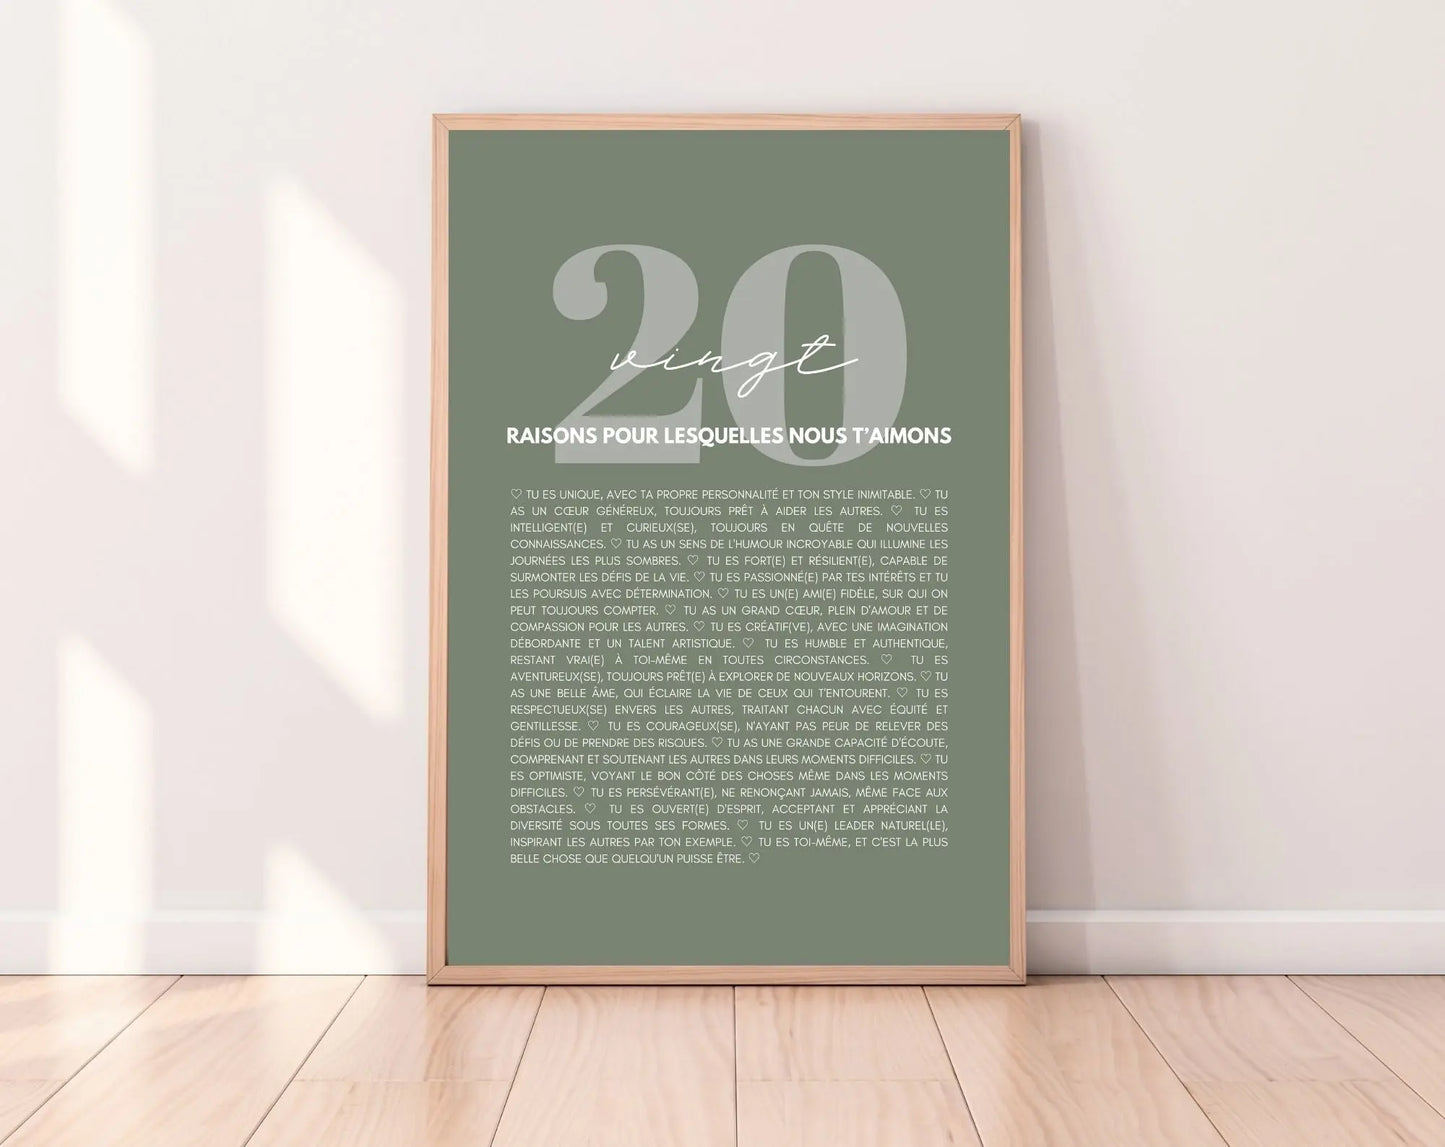 20 raisons pour lesquelles nous t'aimons vert - Cadeau anniversaire 20 ans FLTMfrance